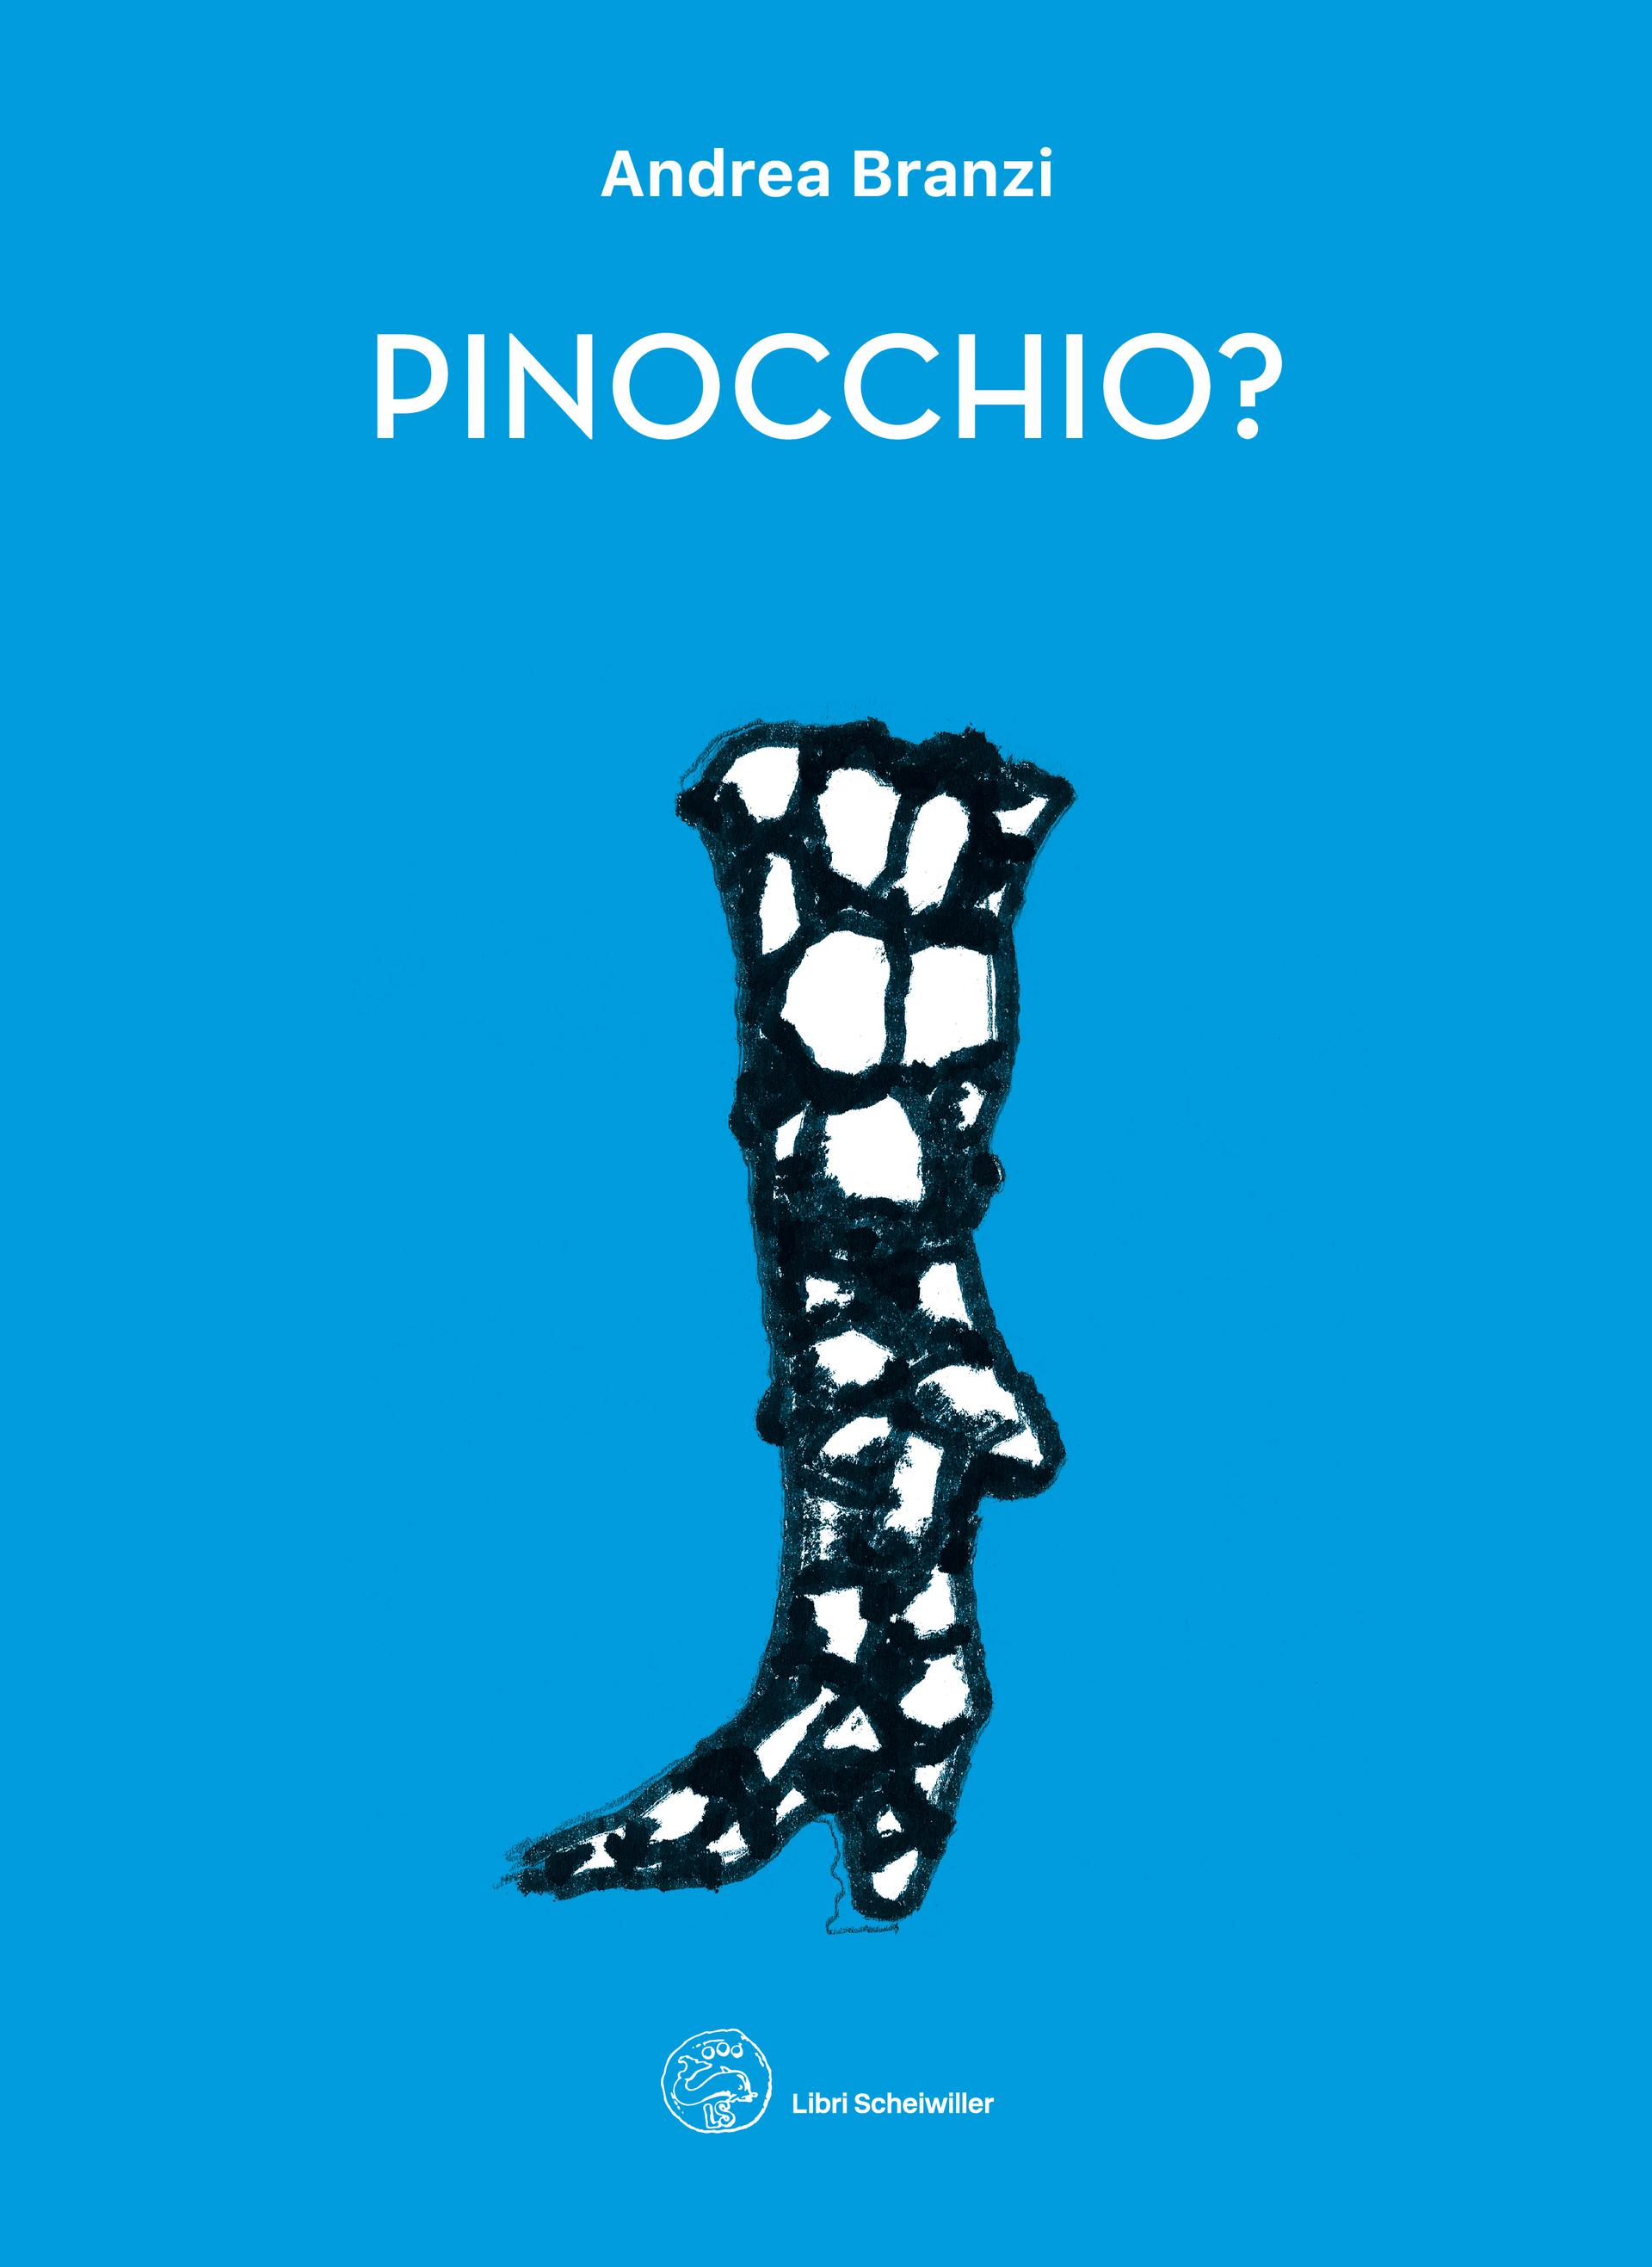 Andrea Branzi, Pinocchio?, Libri Scheiwiller